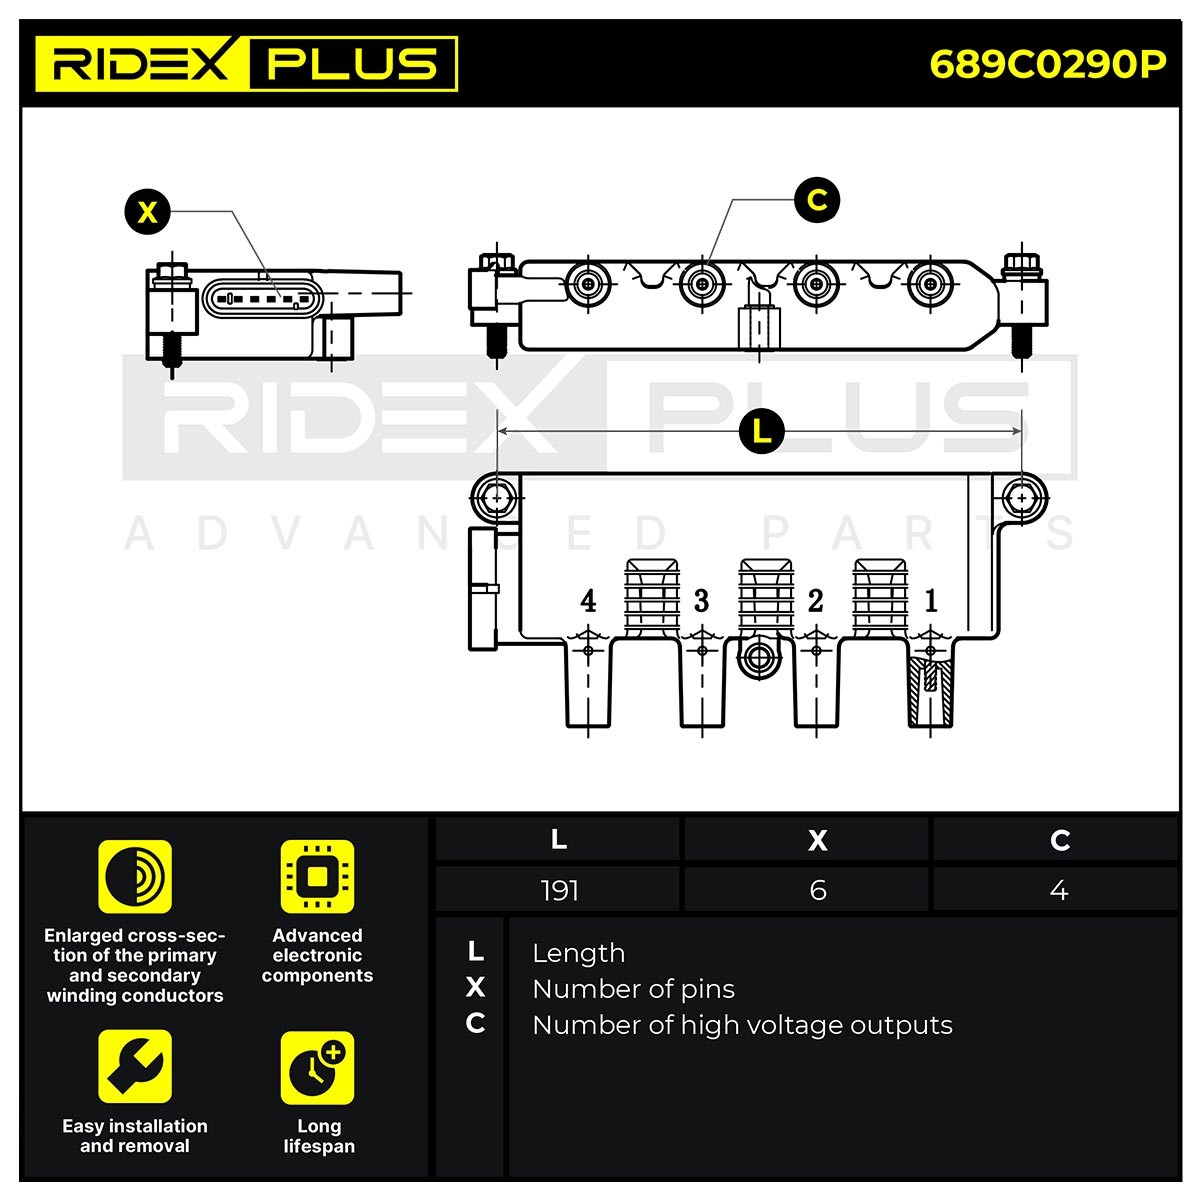 RIDEX PLUS Coil packs 689C0290P